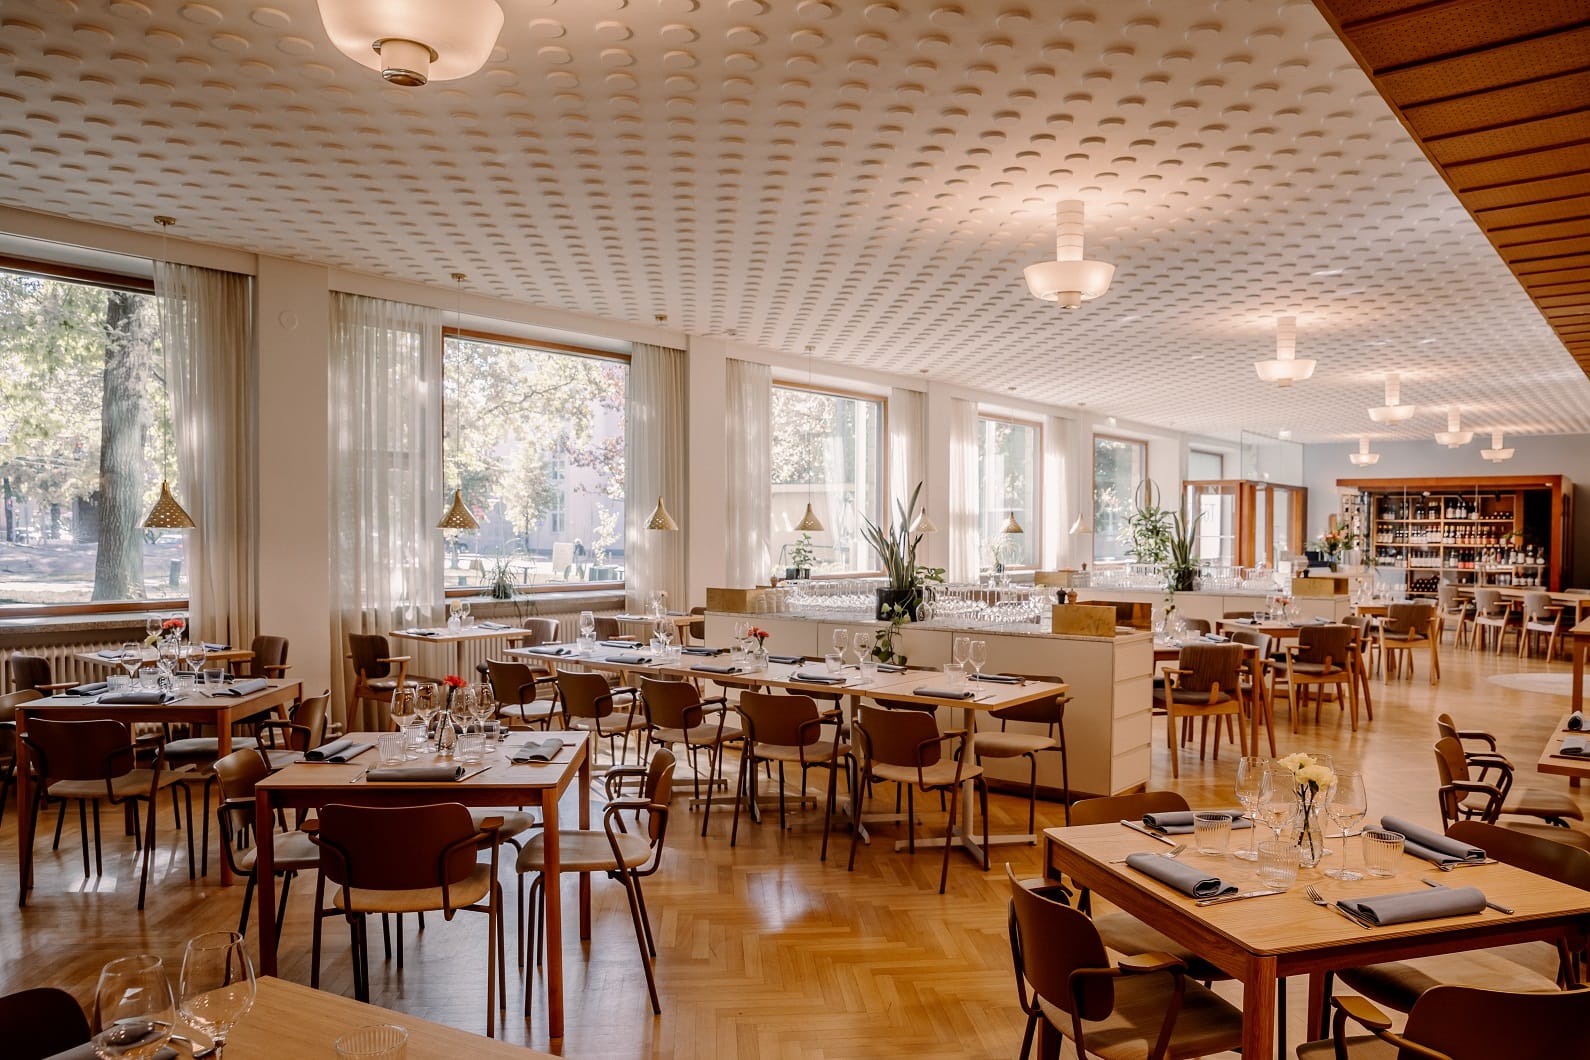 Tyylikäs Ravintola Töökön ravintolasali katettuna, taustalla isot ikkunat - Venuu.fi